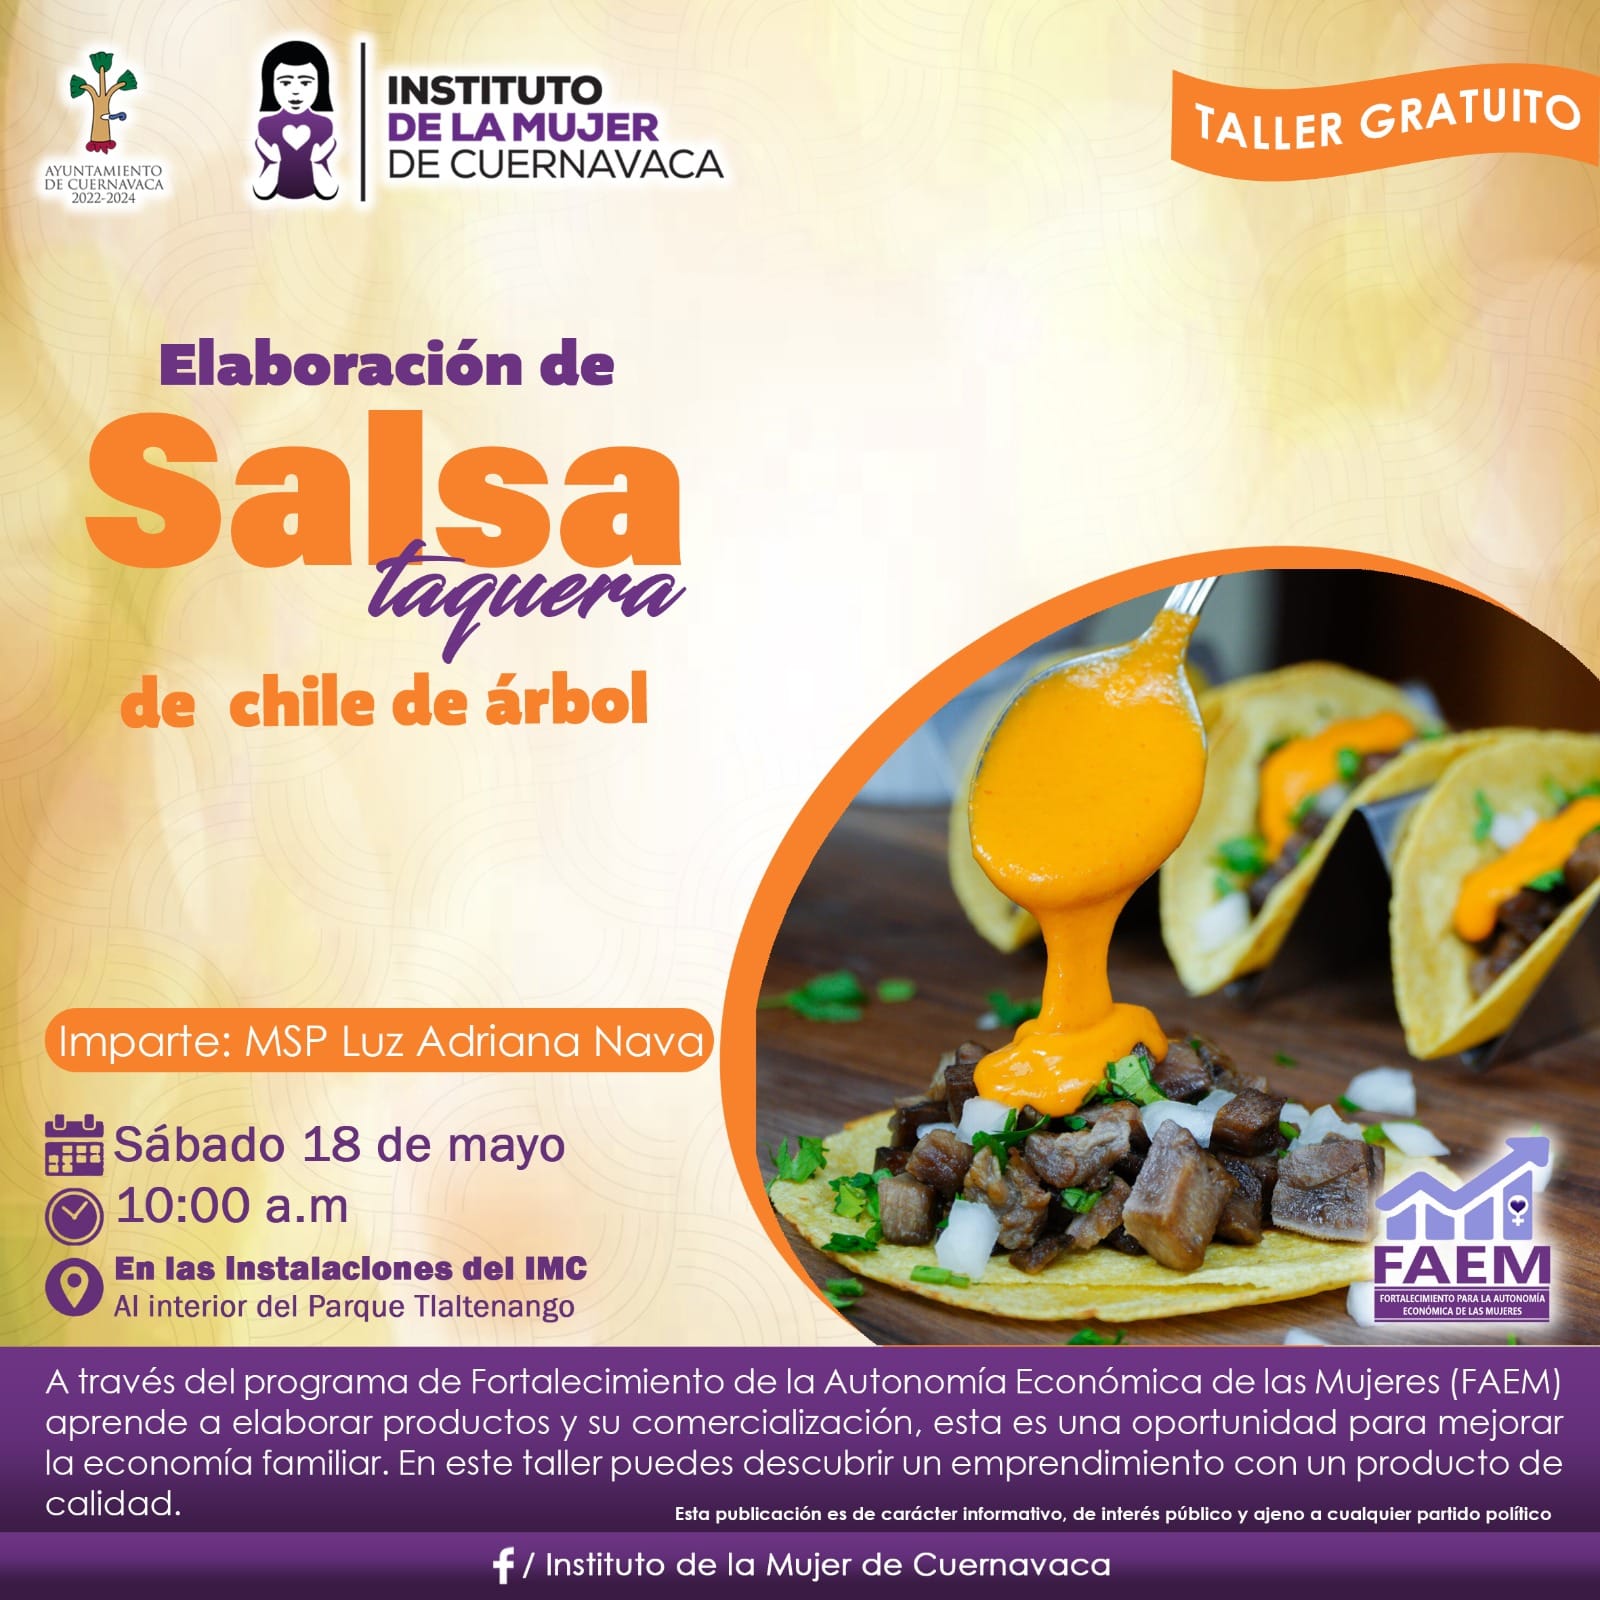 Elaboración de salsa taquera - Instituto de la Mujer de Cuernavaca